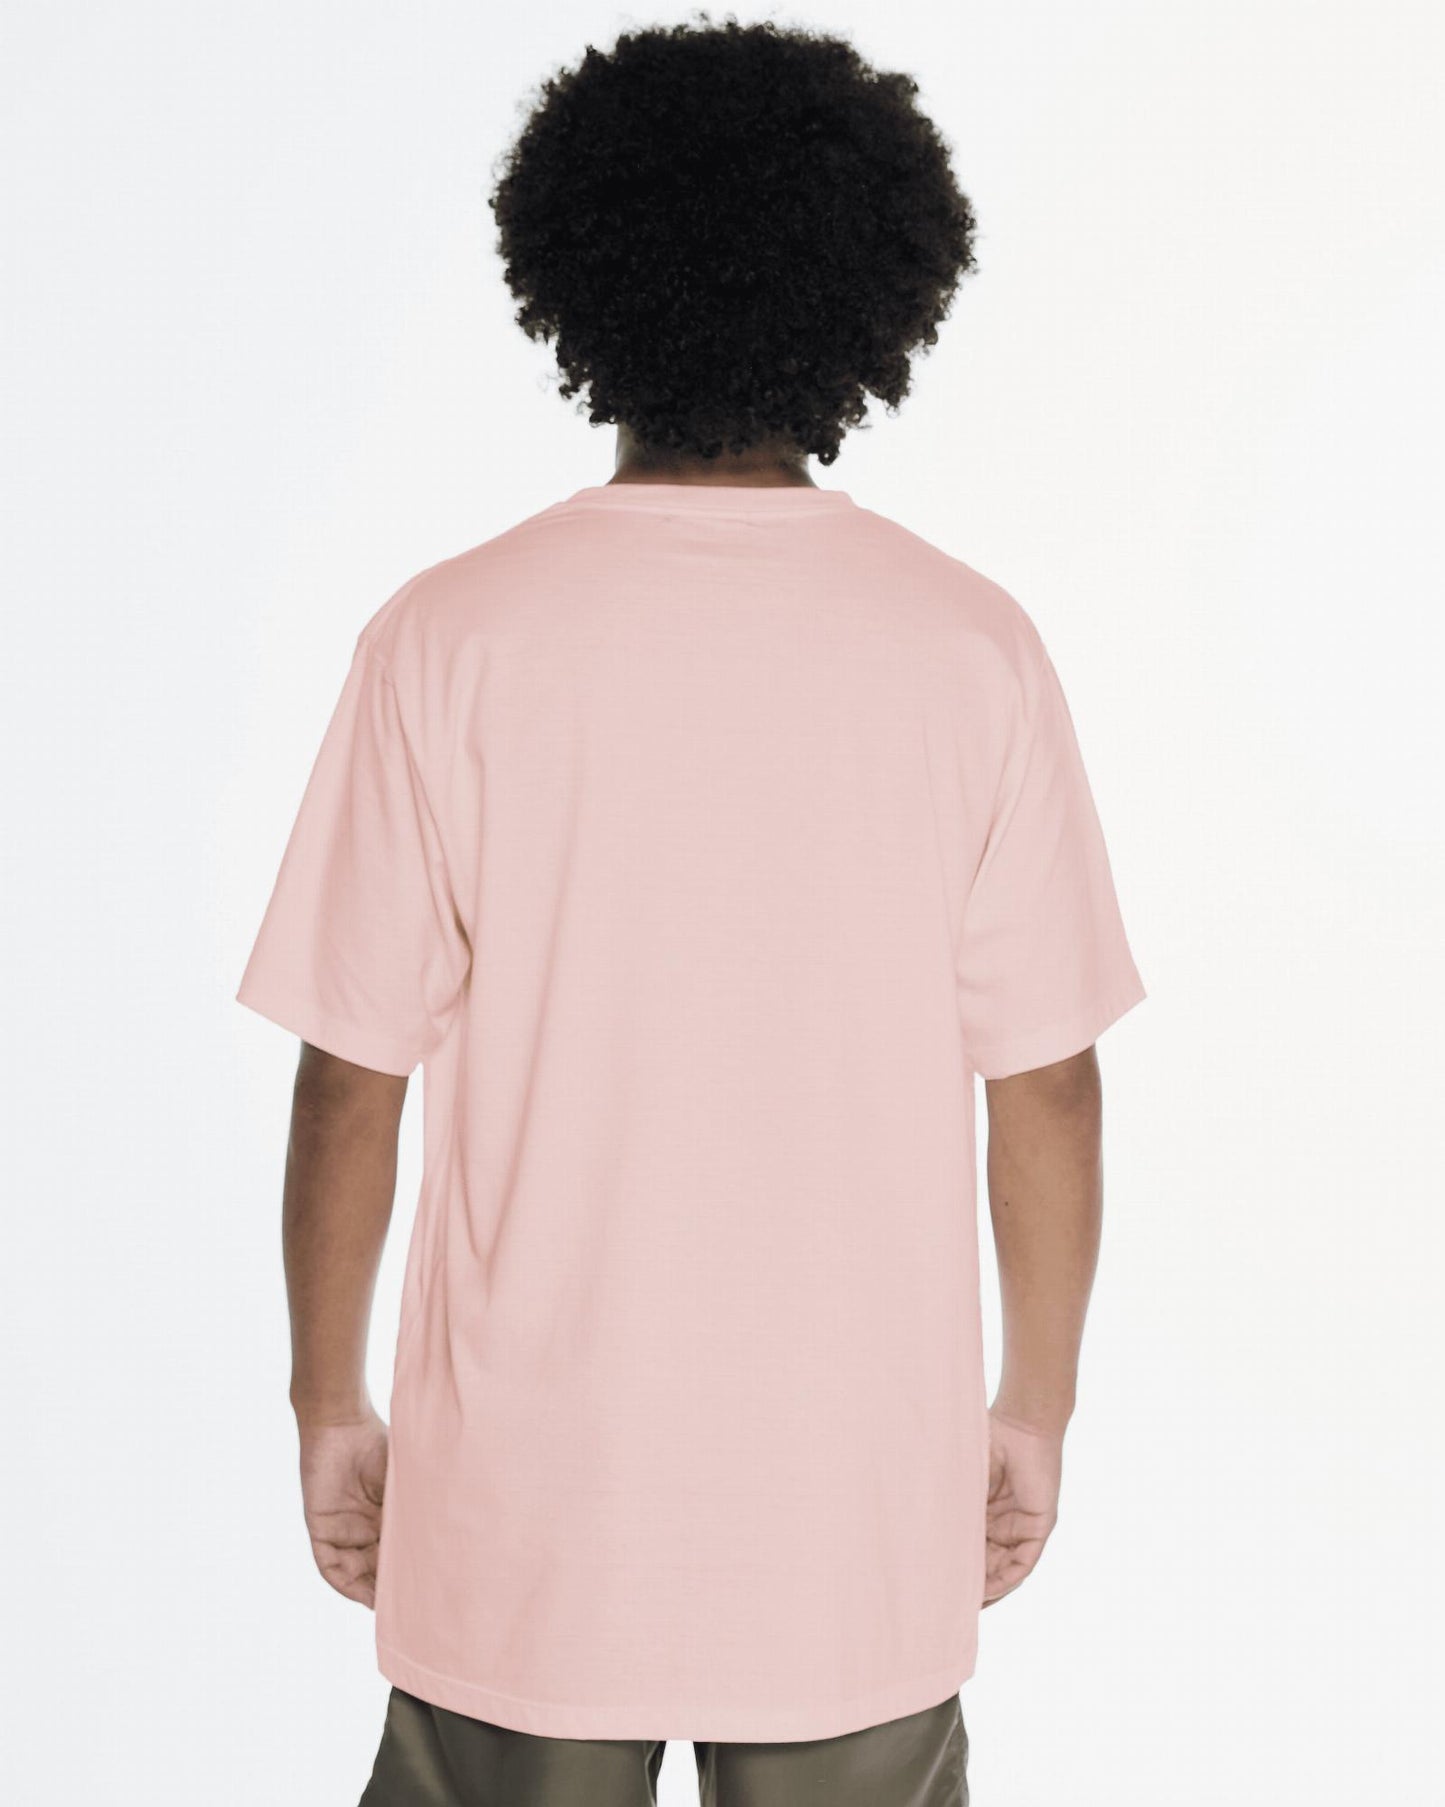 Printed T-Shirt - Pink Fun